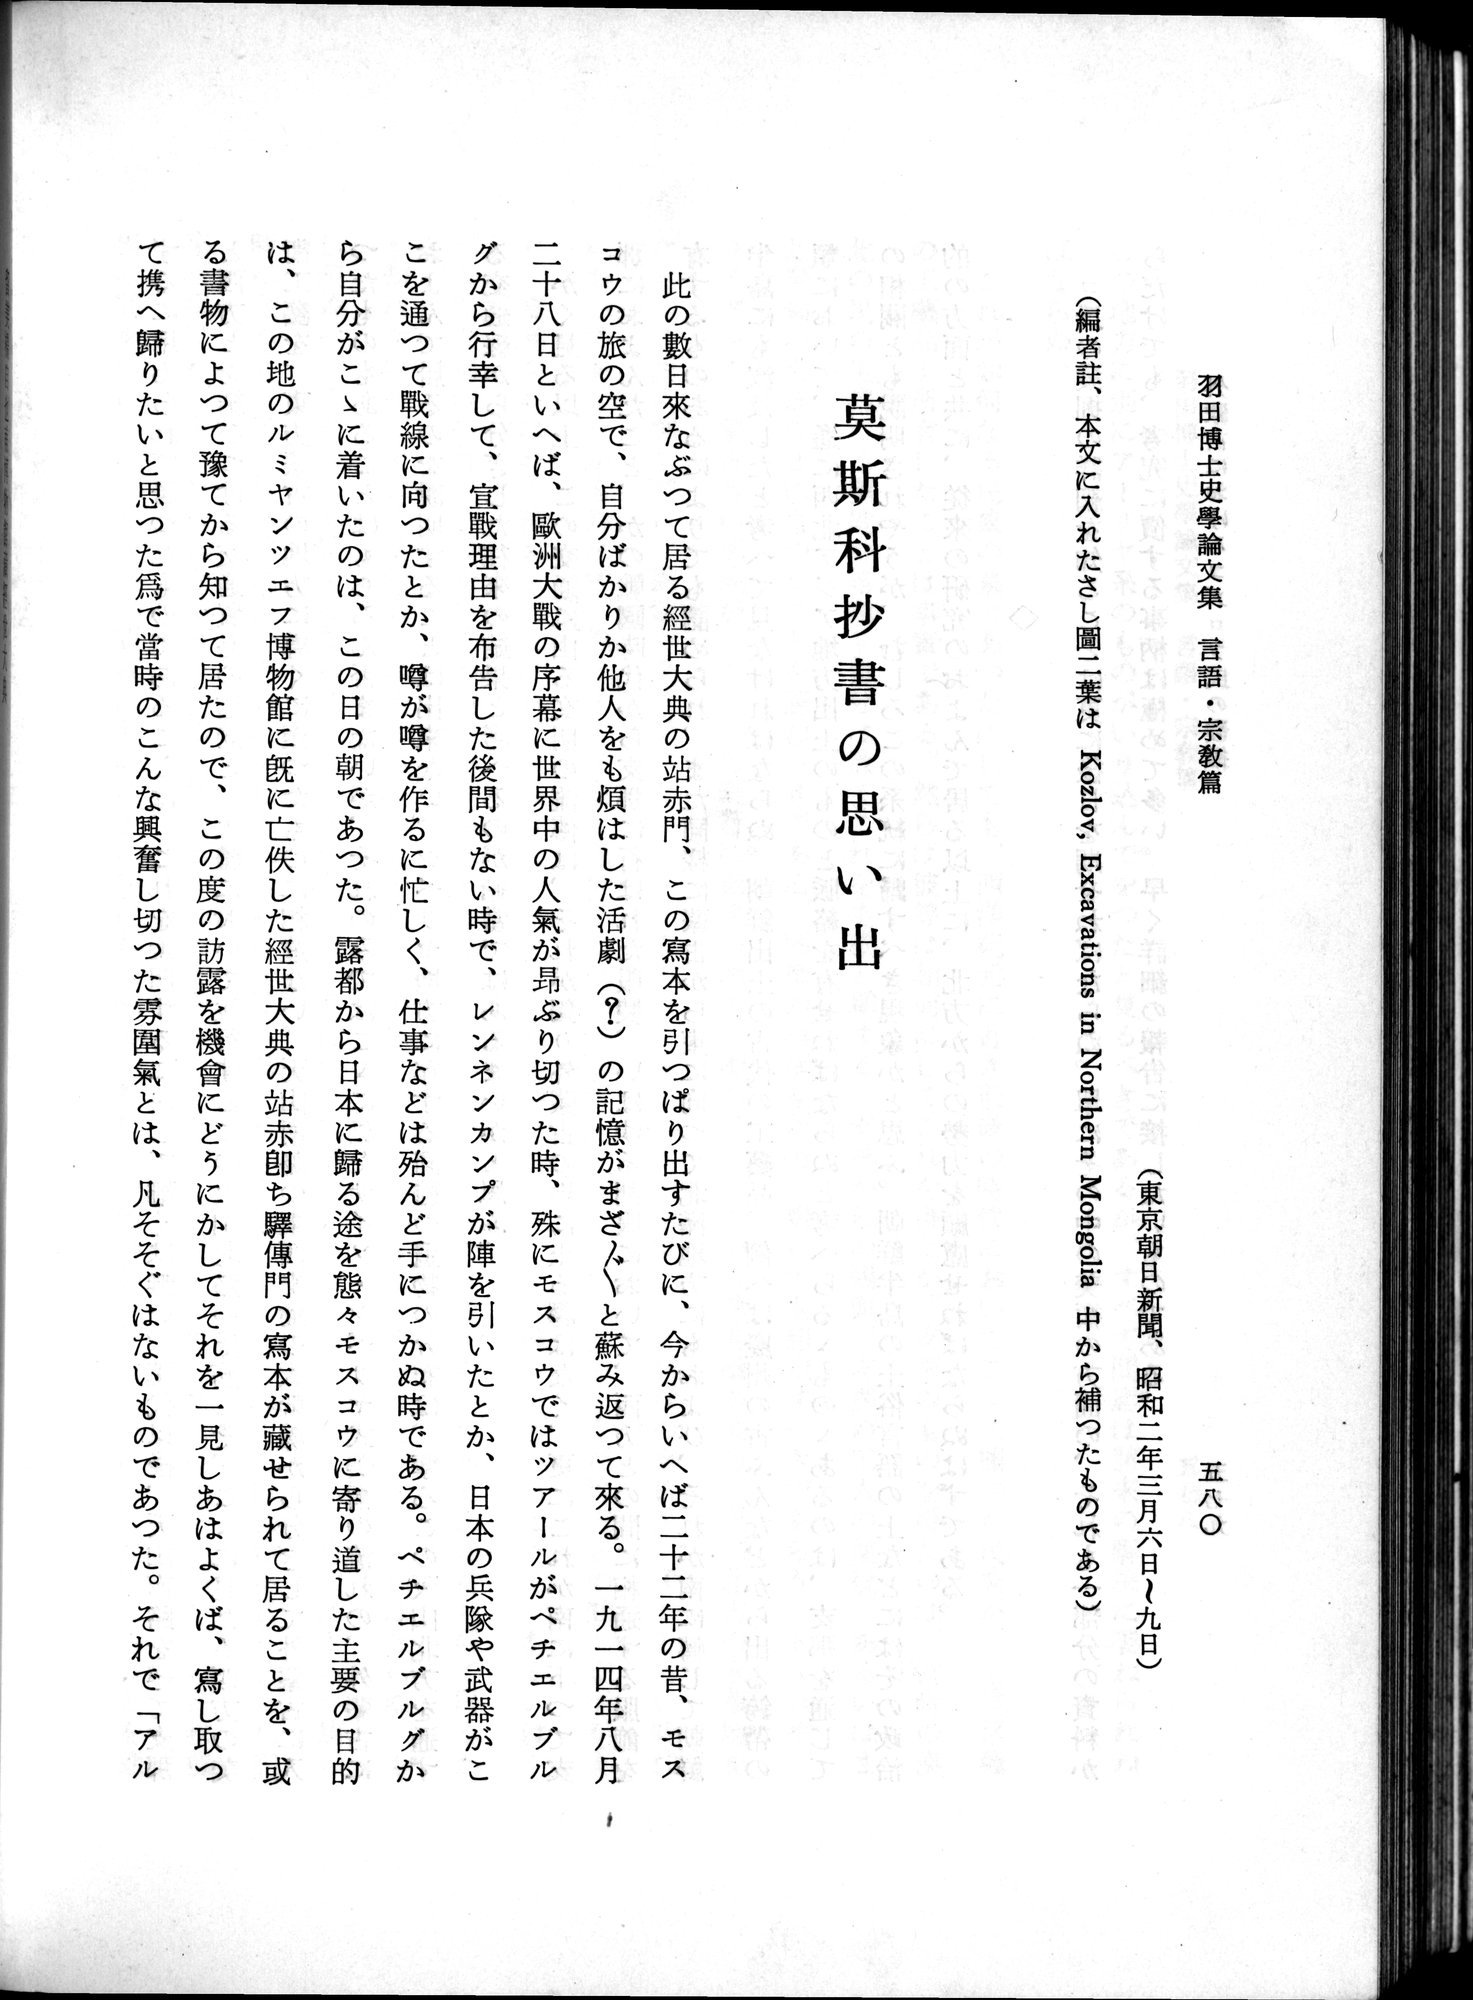 羽田博士史学論文集 : vol.2 / Page 642 (Grayscale High Resolution Image)